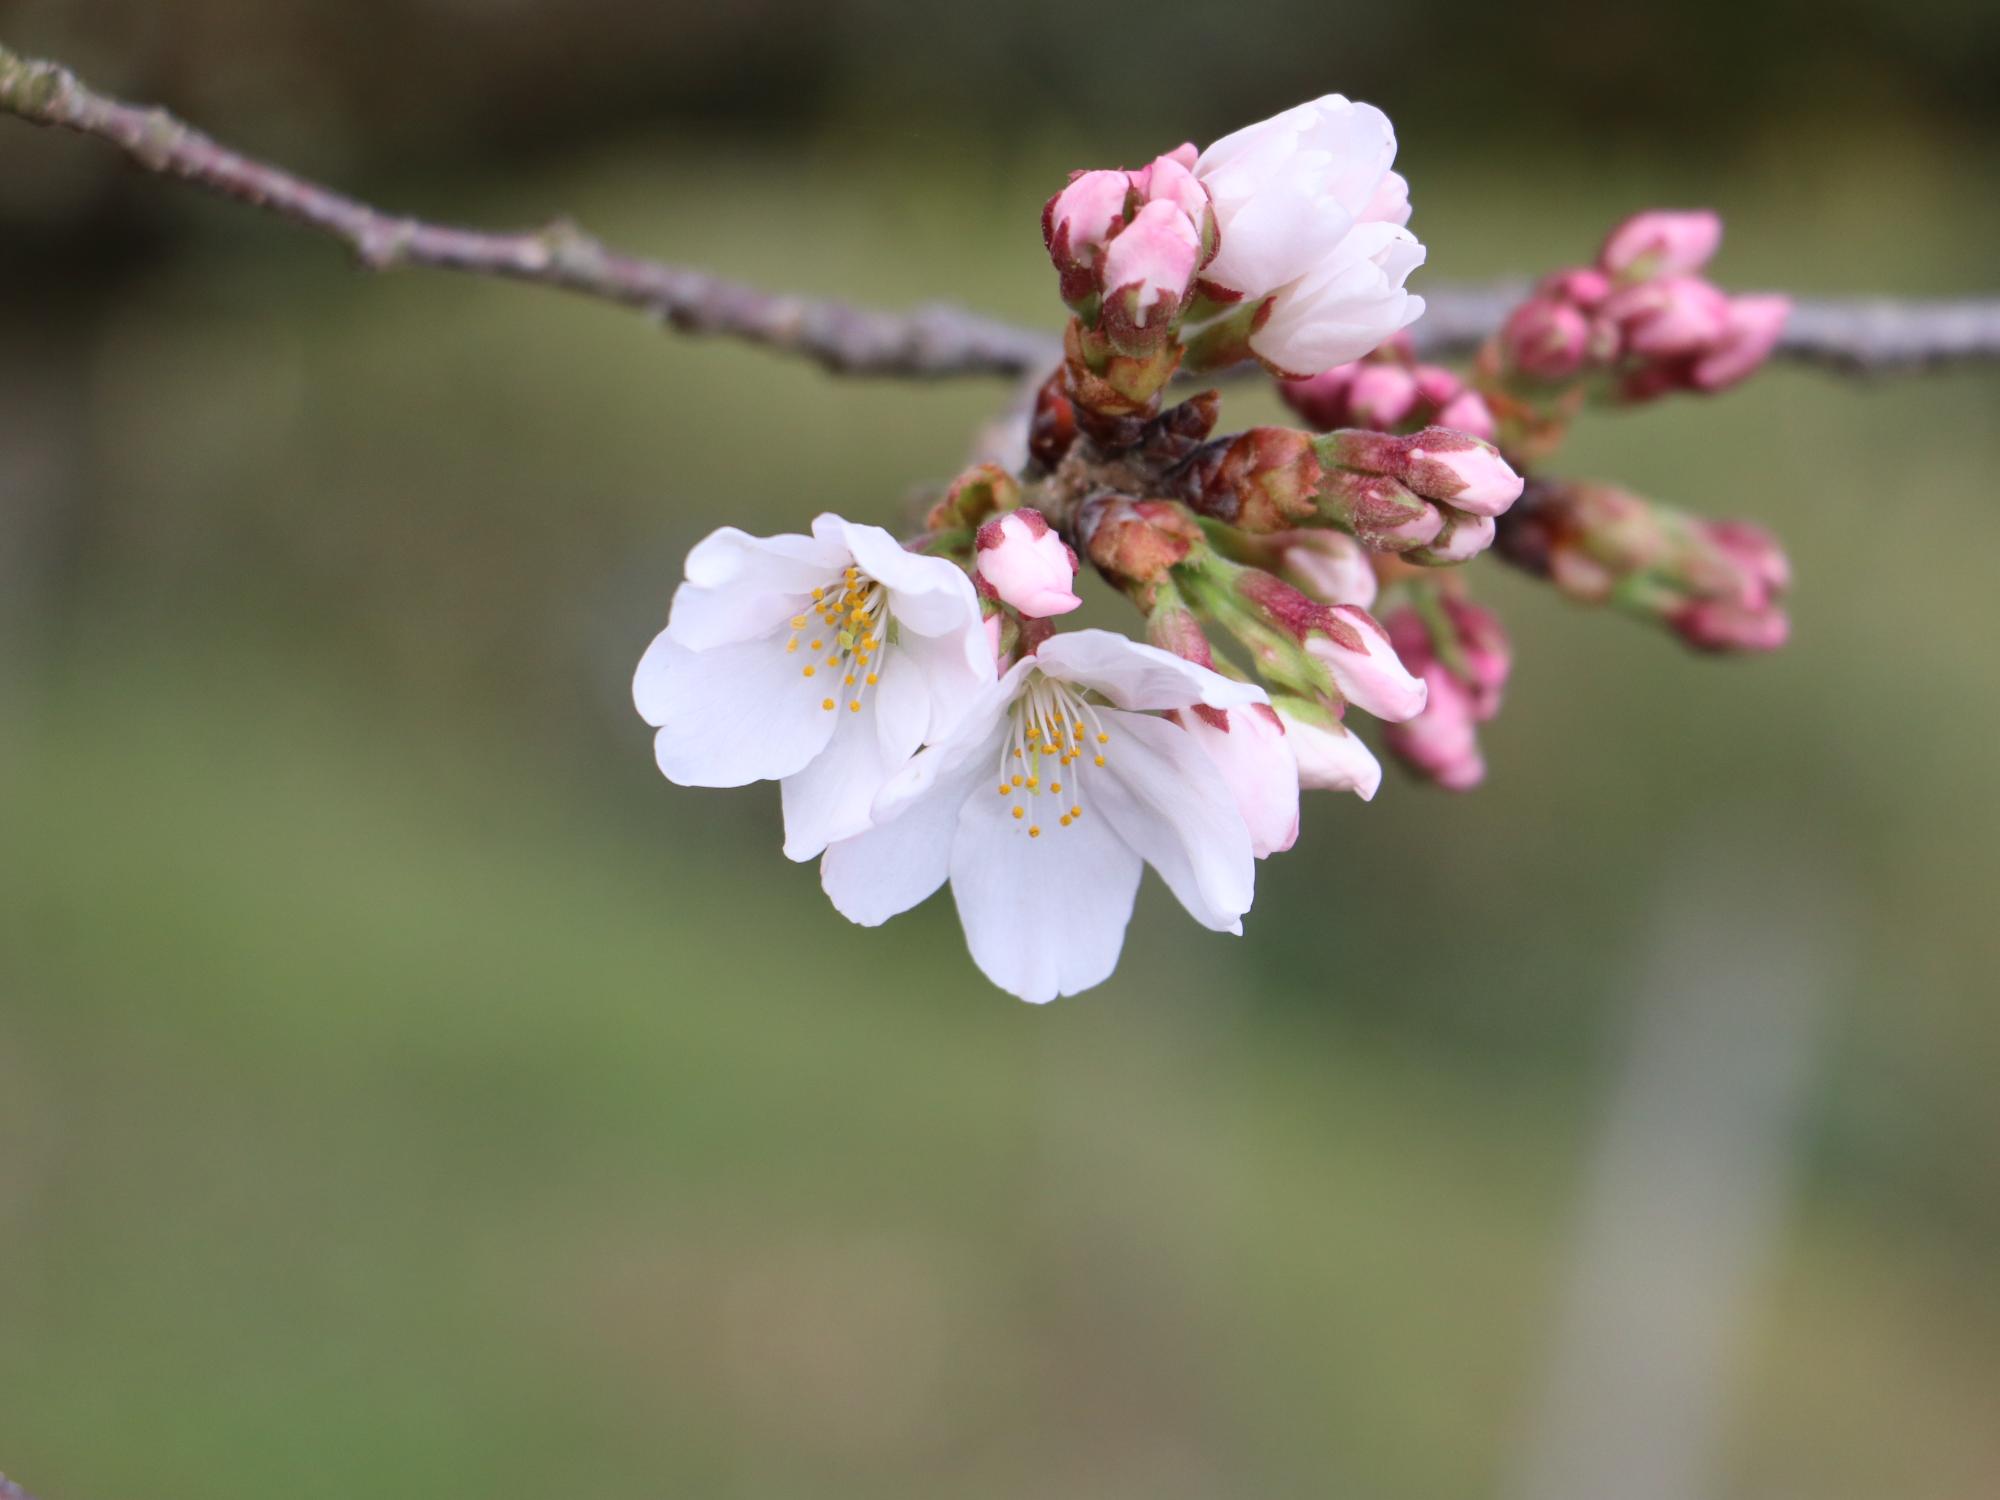 開花した桜の花びらのアップ写真。